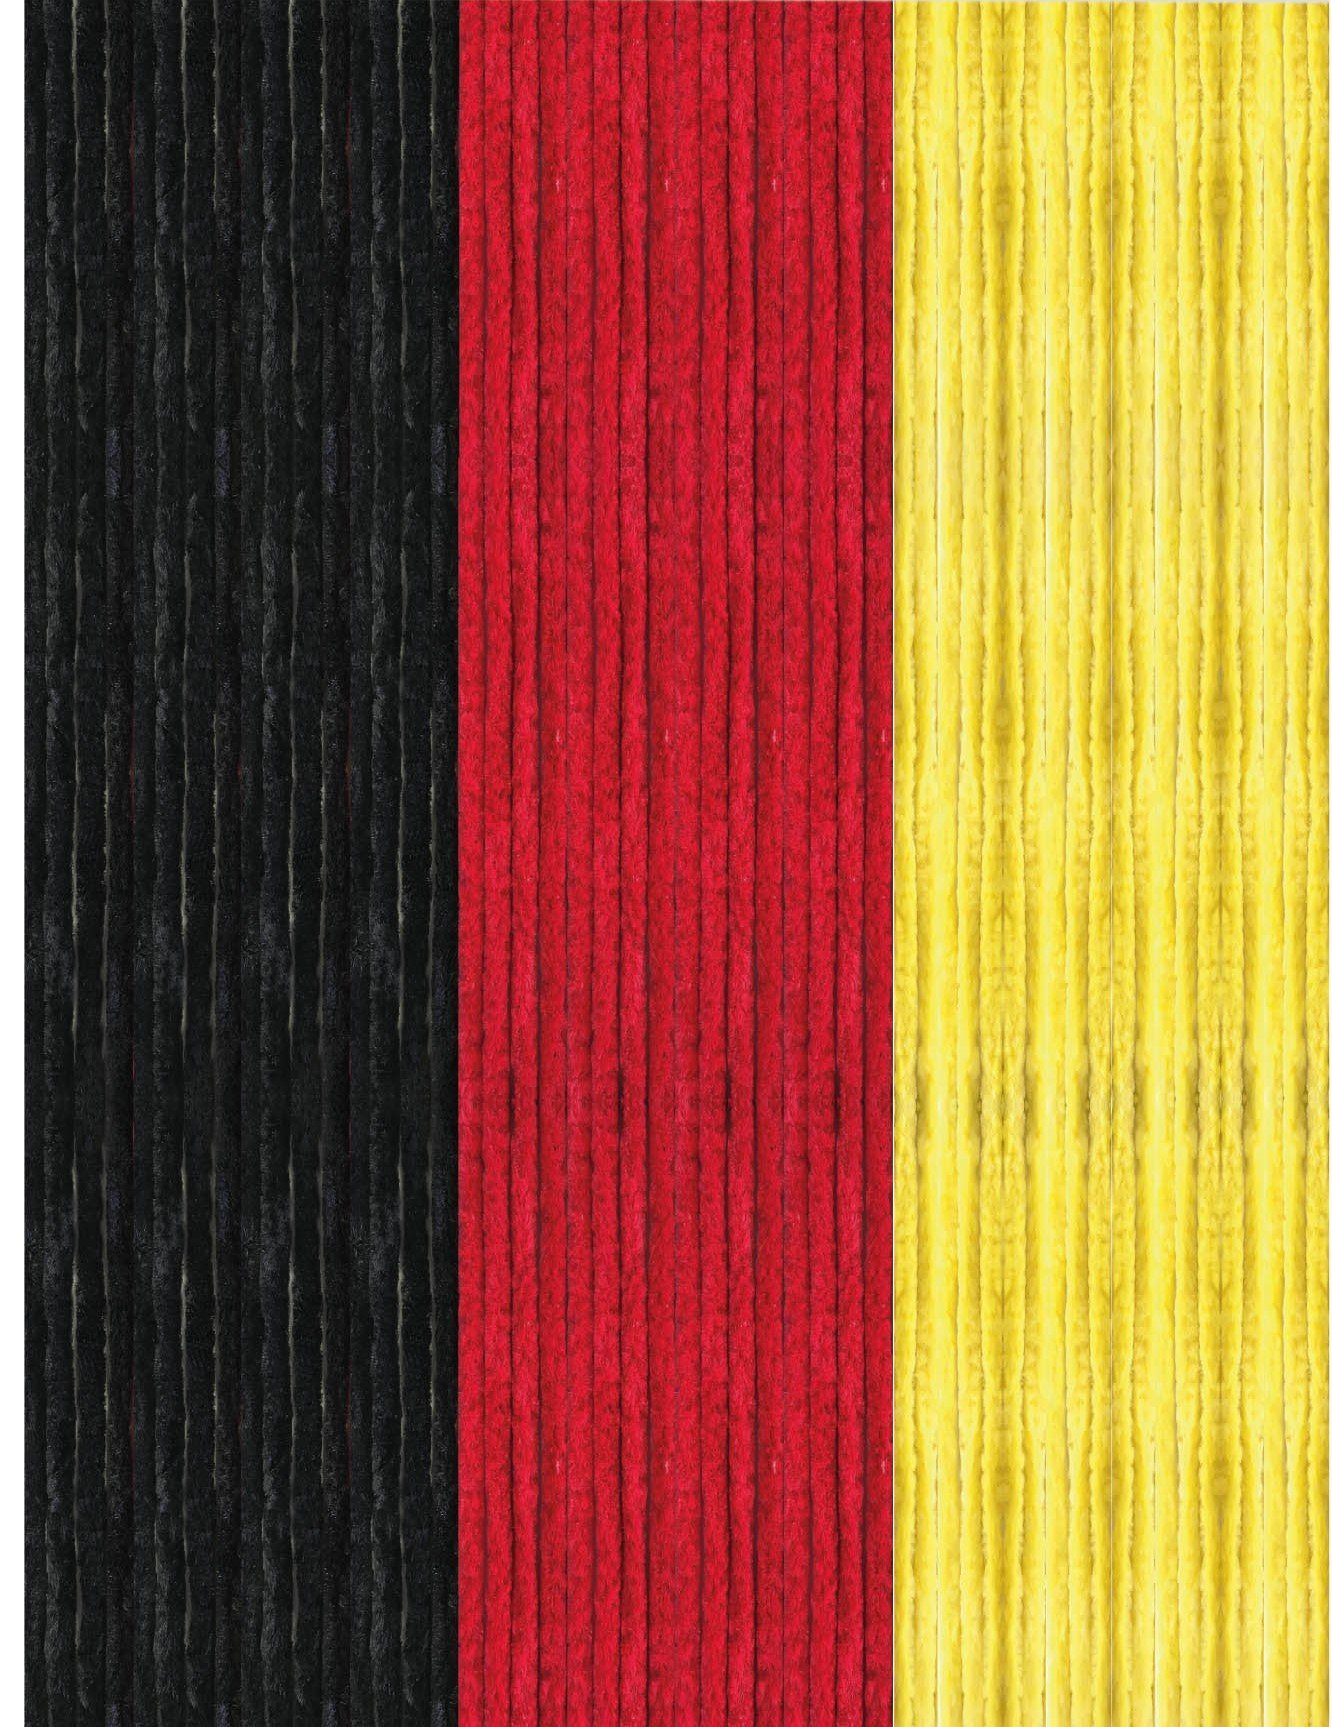 Türvorhang Flauschi, Arsvita, Ösen (1 St), Flauschvorhang 160x185 cm in Unistreifen schwarz - rot - gelb, viele Farben Schwarz-Rot-Gold | Raumteiler-Vorhänge